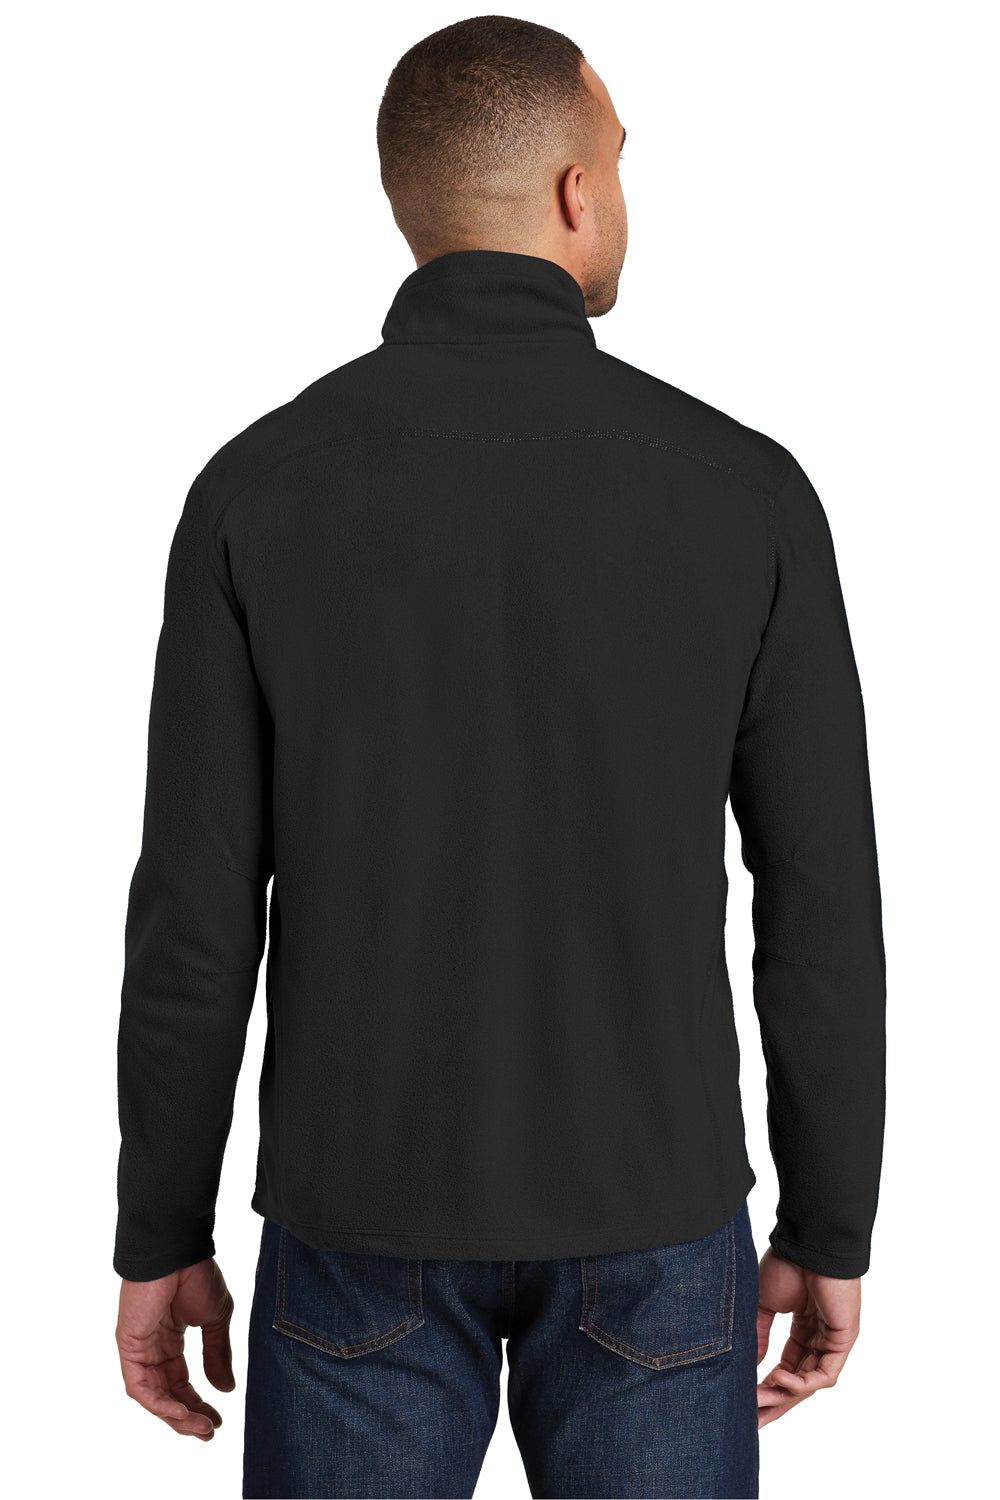 Port Authority F224 Mens Microfleece 1/4 Zip Sweatshirt Black Back